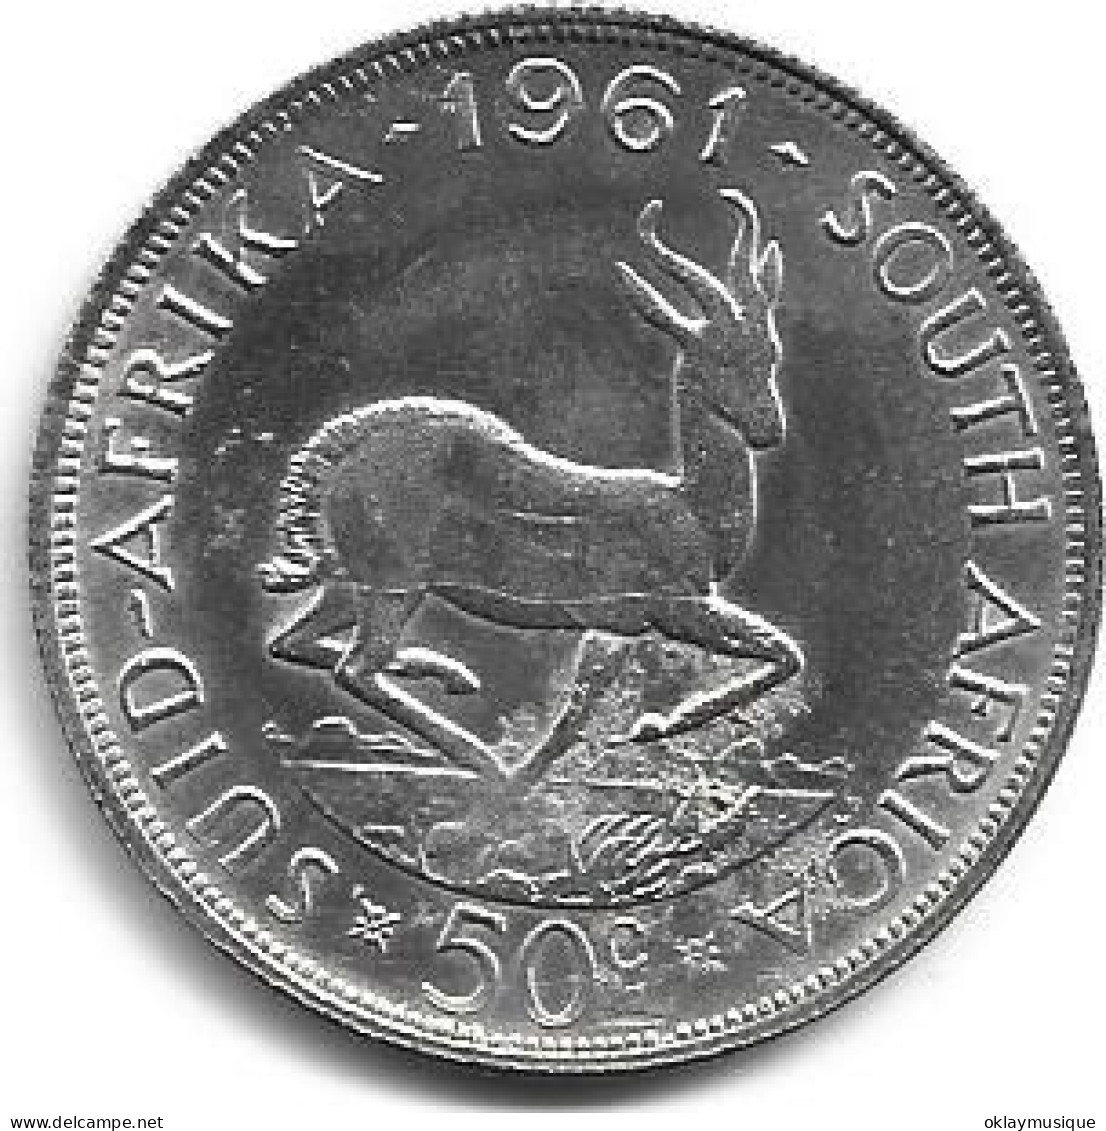 Afrique Du Sud 50c 1961 Dimension 33,1 MM - South Africa